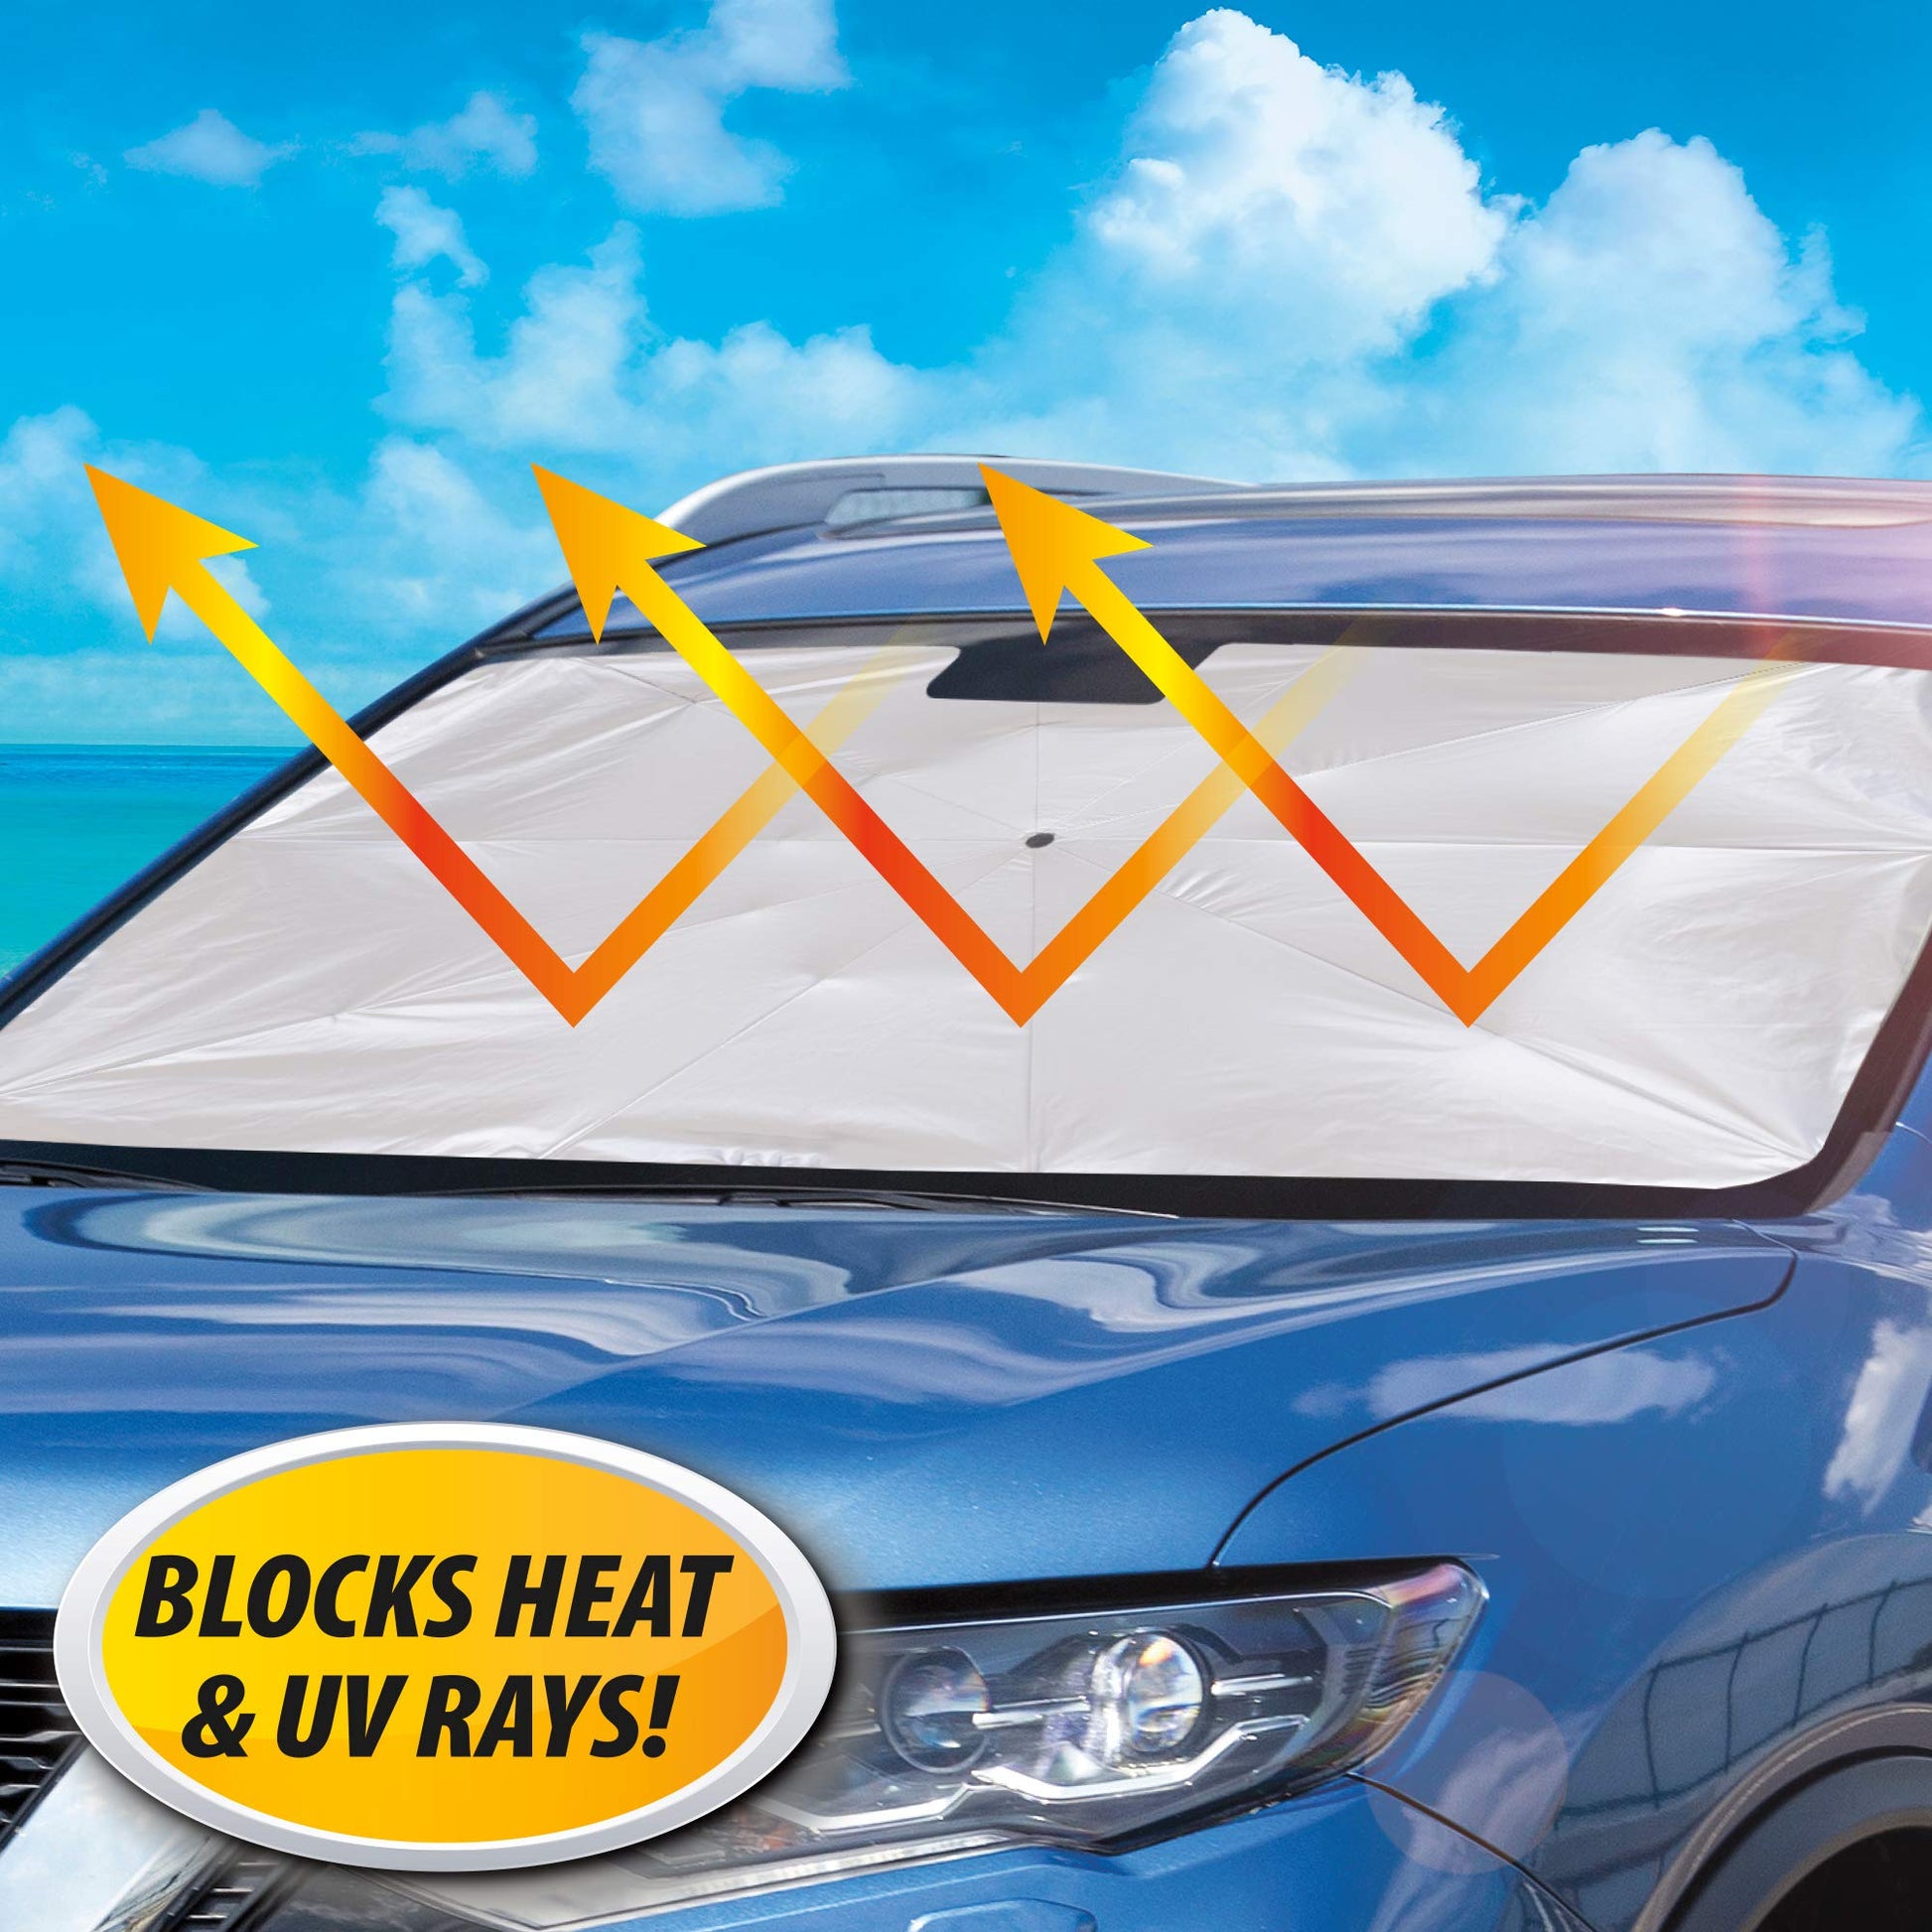 Car Sun Shade Window Sunshade Covers Visor Shield Screen Foldable Auto Sun  Reflective Shade Windshield - China Car Sun Shade, Car Sunshade